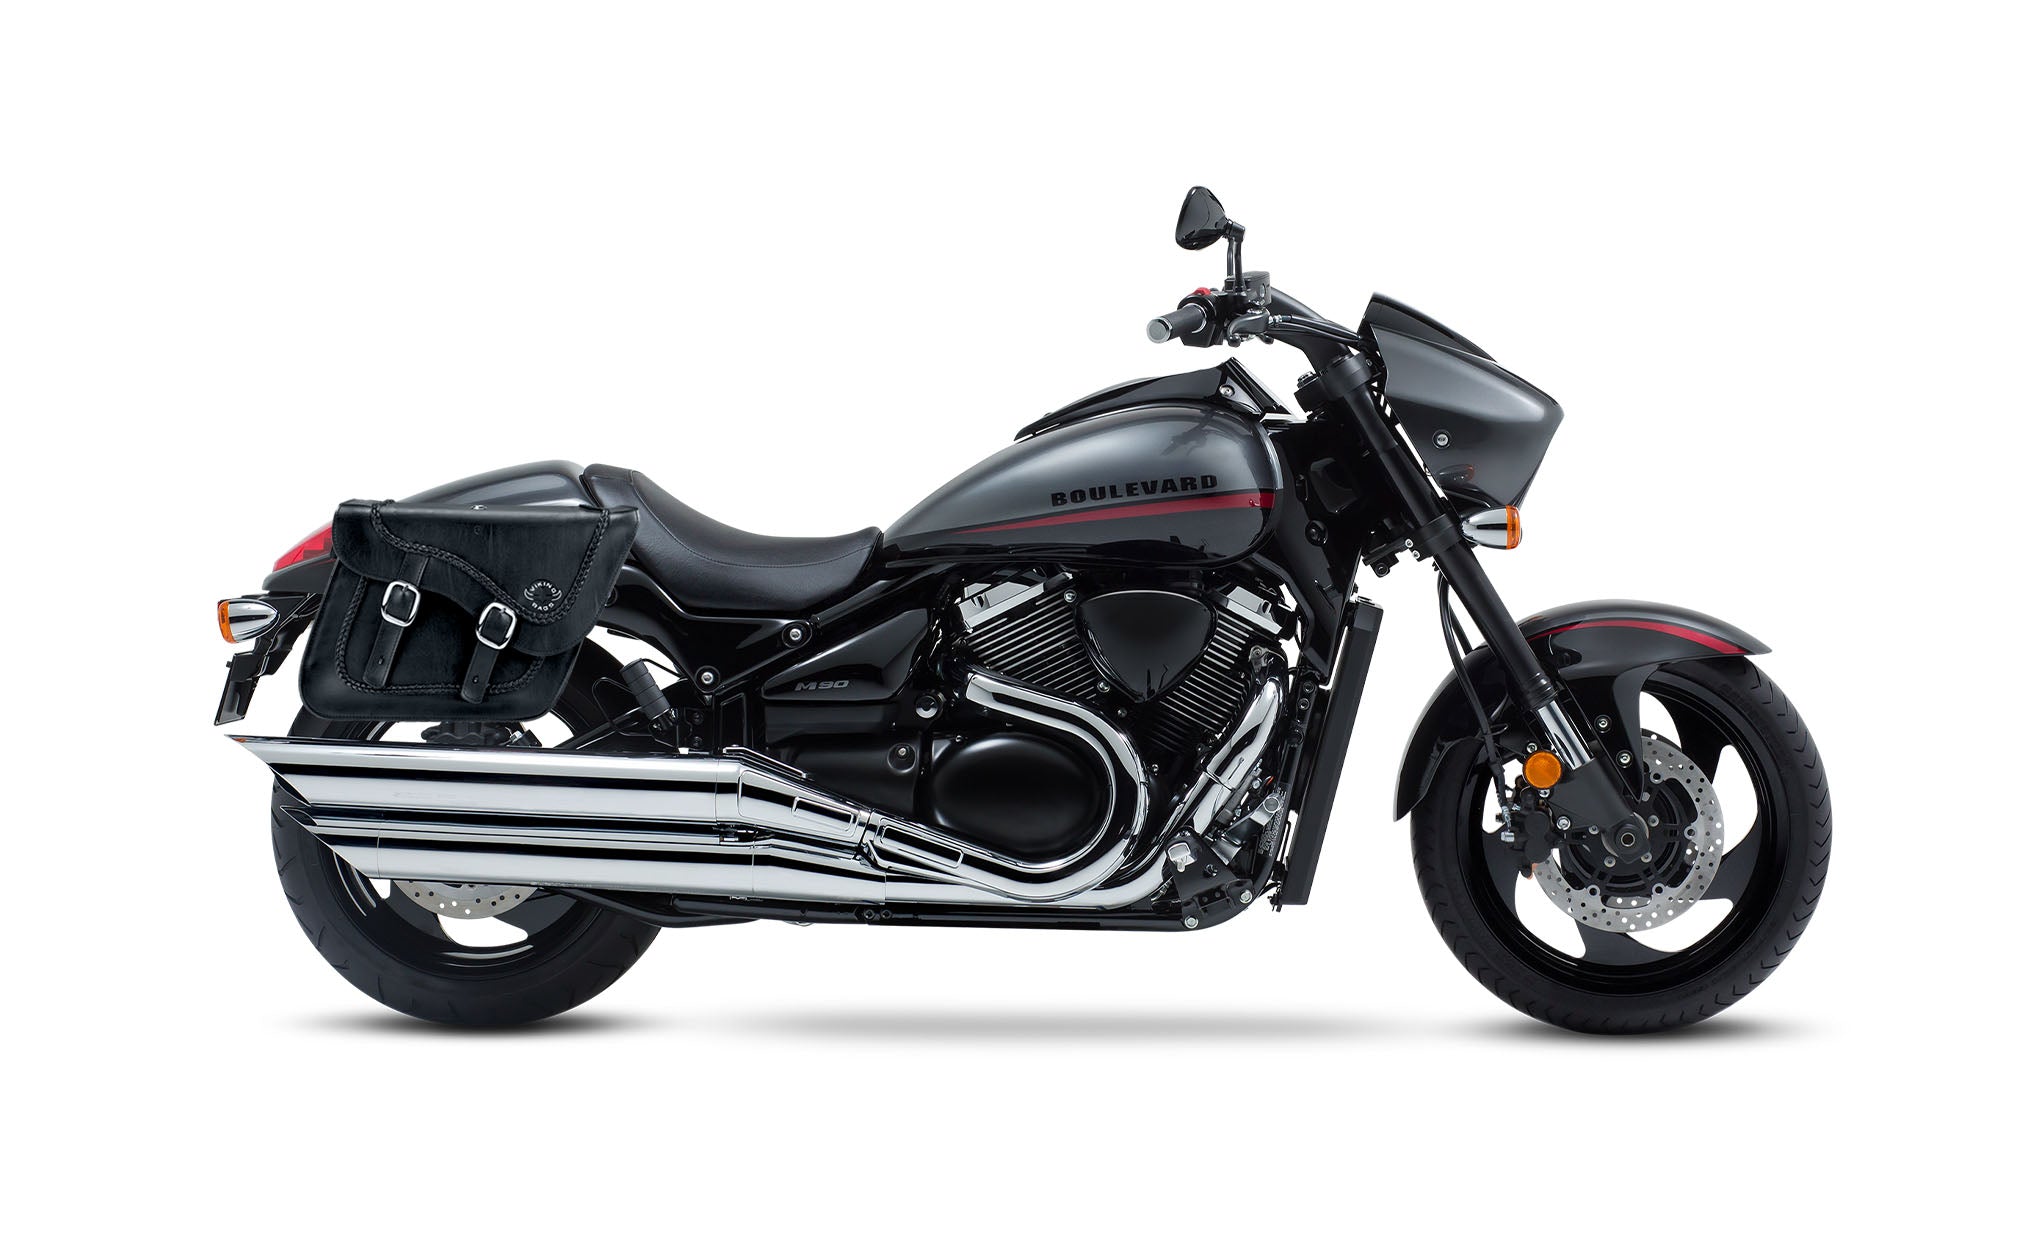 Viking Americano Suzuki Boulevard M90 Vz1500 Braided Large Leather Motorcycle Saddlebags on Bike Photo @expand